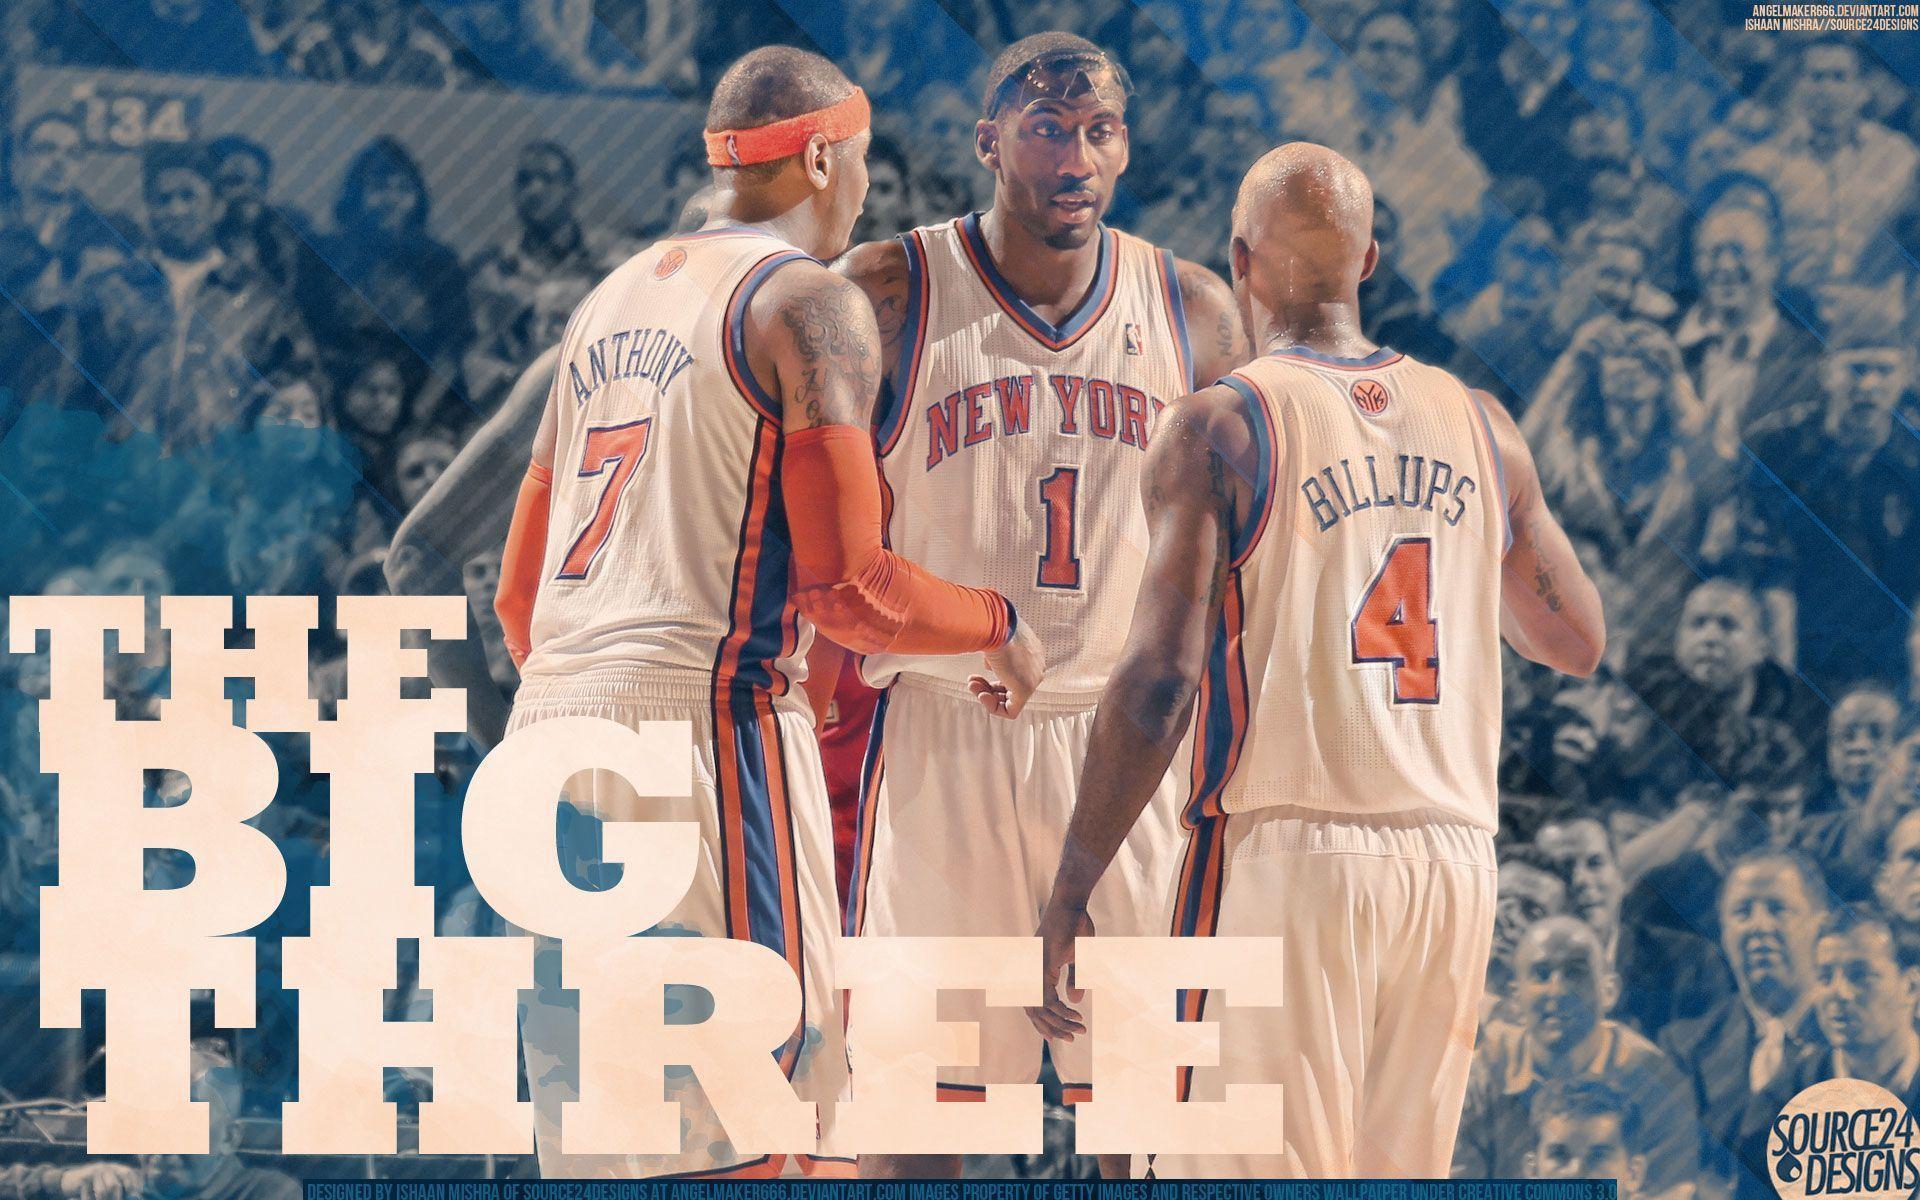 Melo Stat Billups Knicks Widescreen Wallpaper. Basketball